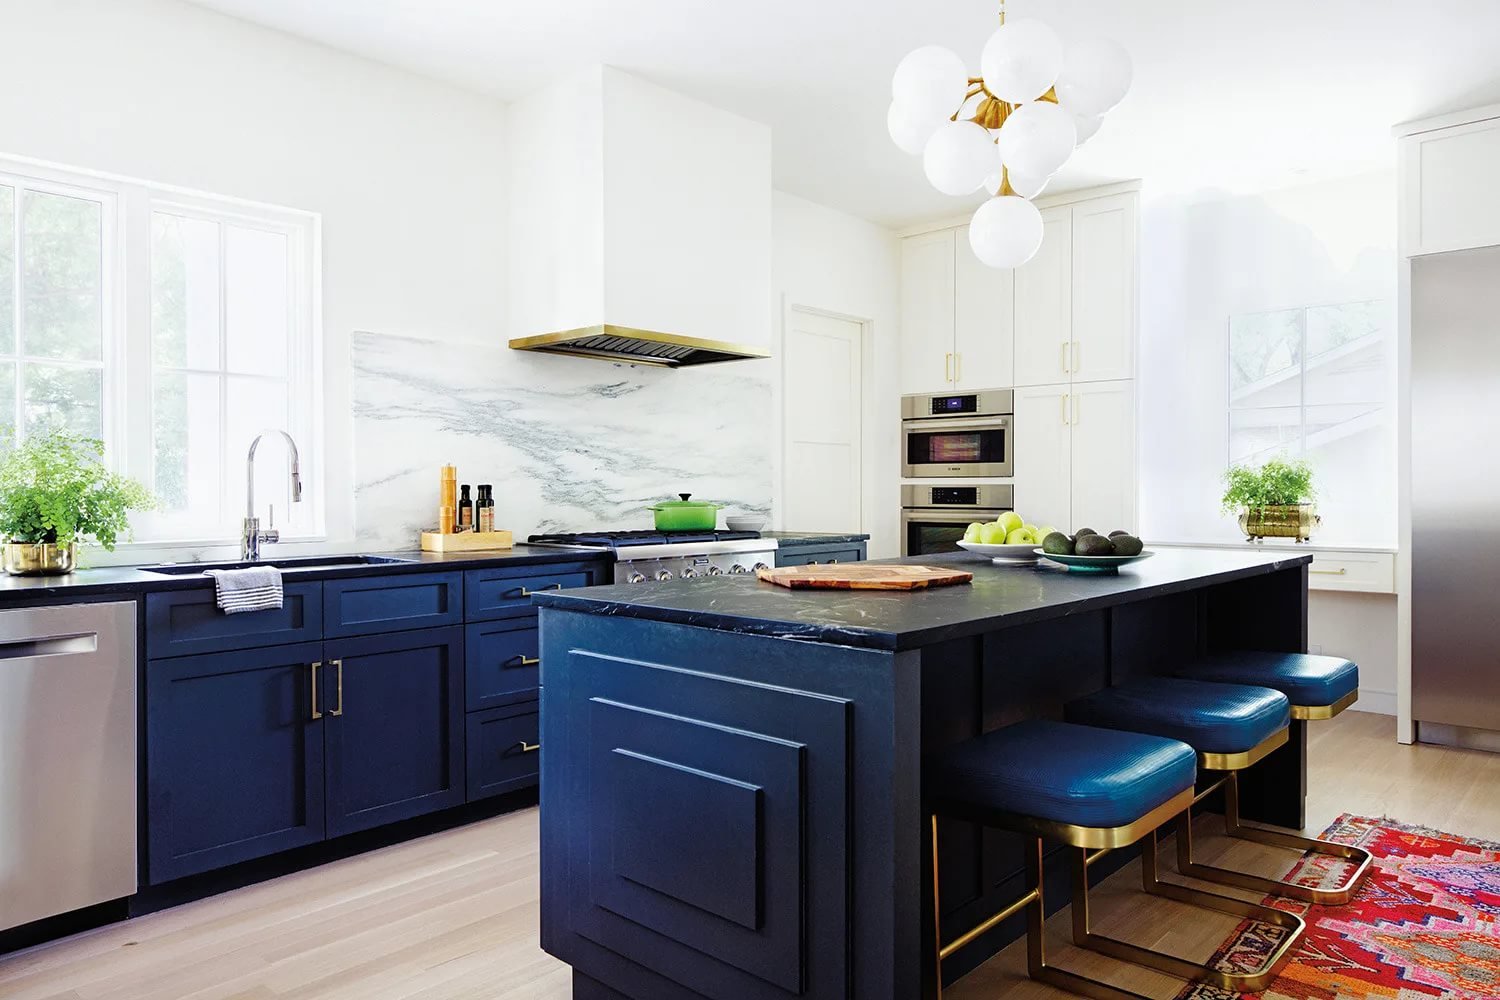 Белая кухня синяя столешница. Кухня Navy Blue. Кухня в темно синем цвете. Кухонный гарнитур синего цвета. Синяя кухня в интерьере.